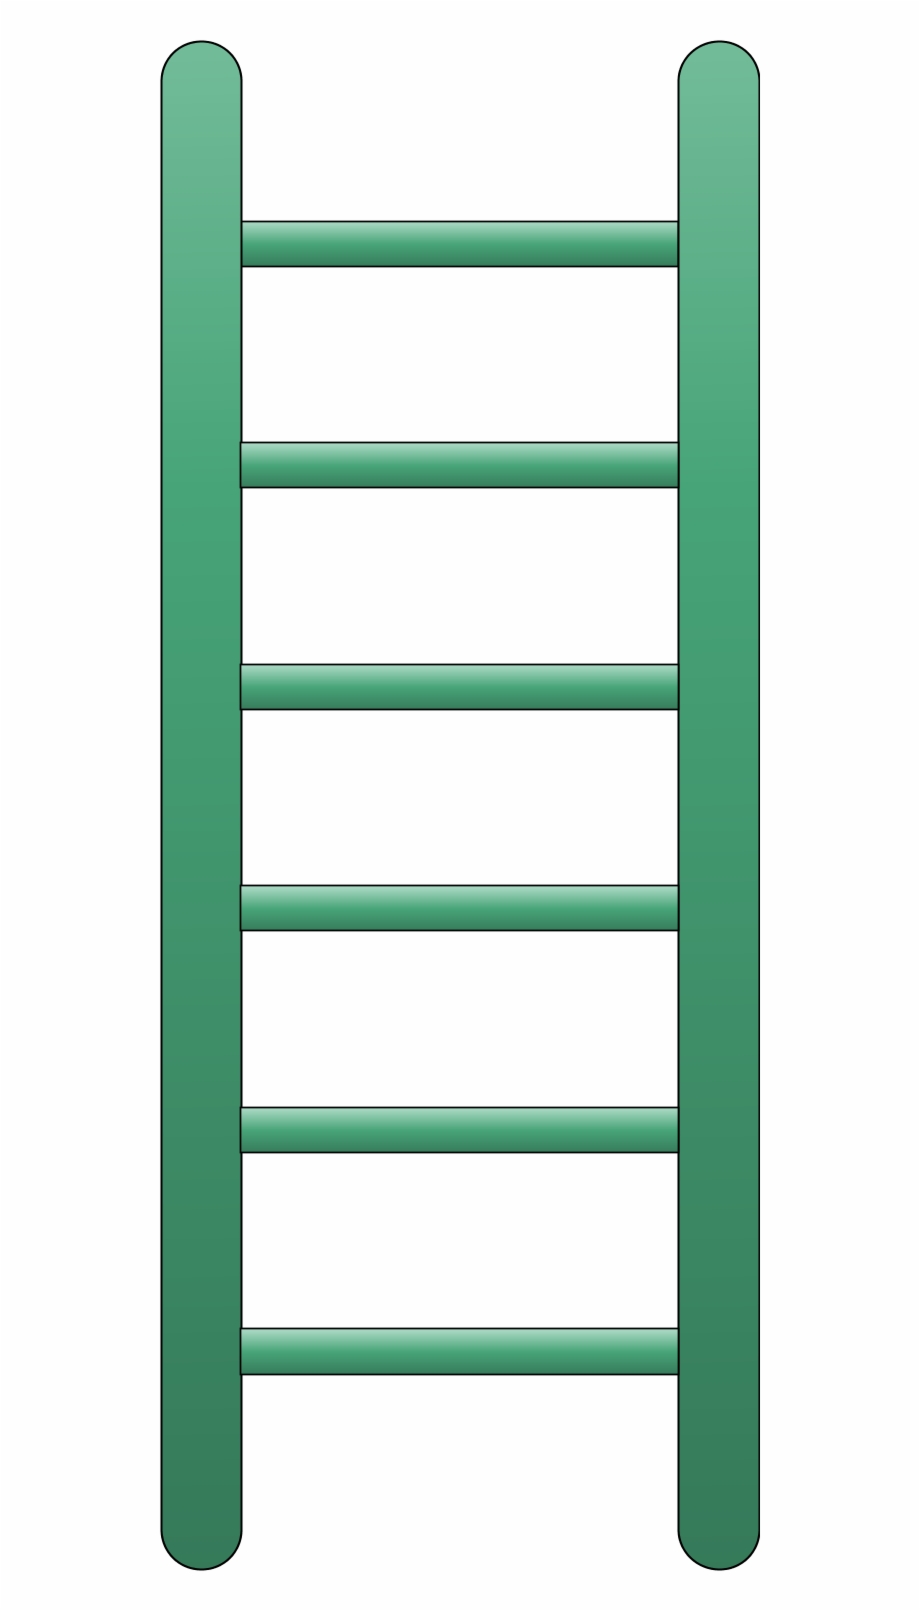 ladder clipart flat